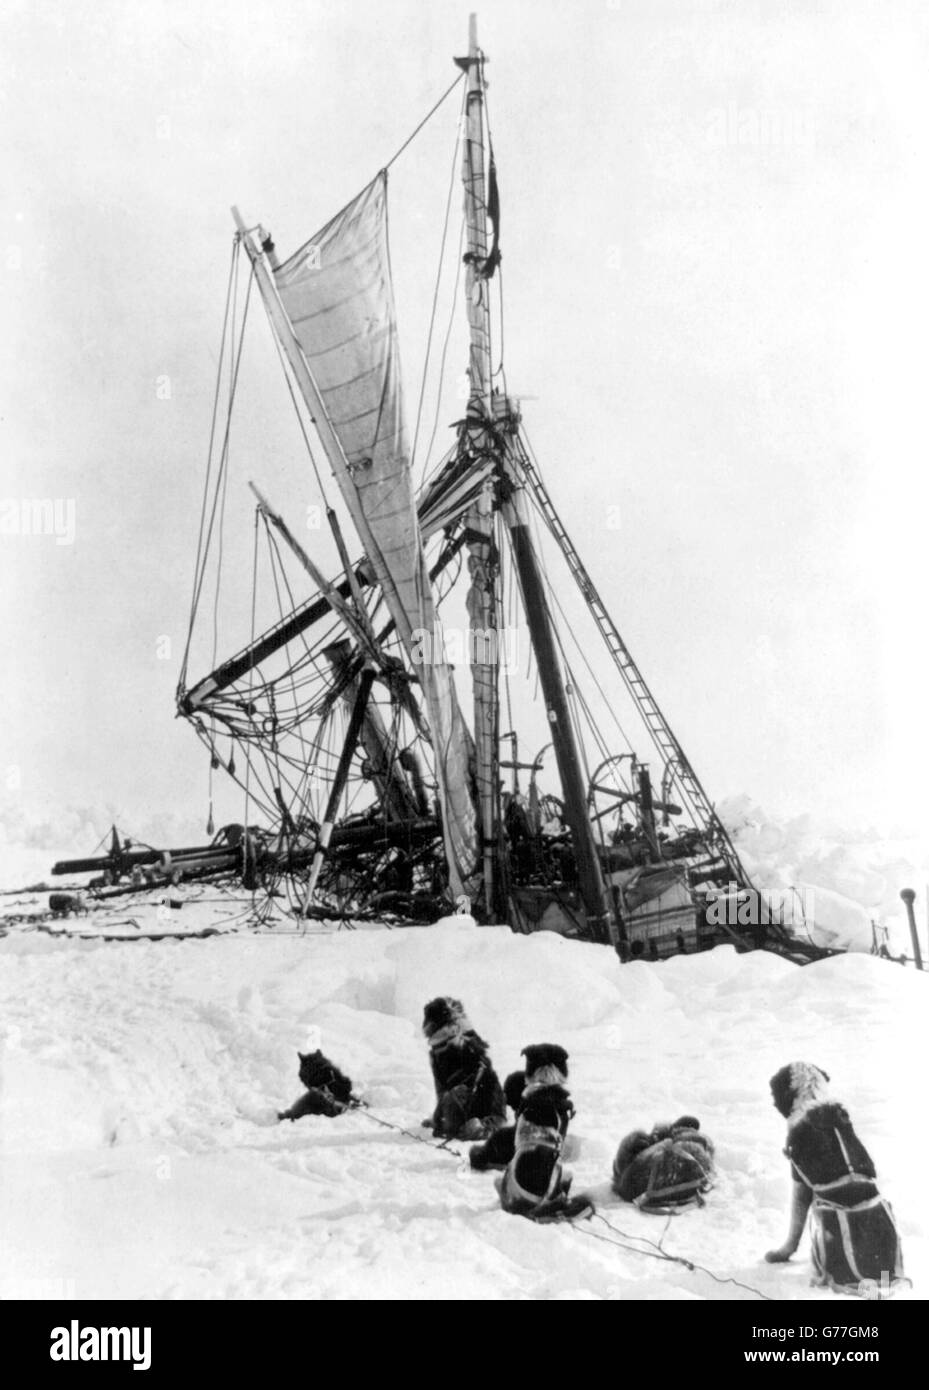 Ernest Shackleton, Ausdauer. Sir Ernest Shackletons Schiff, Ausdauer, gefangen im Eis während der 1914/15 Imperial Trans-Antarctic Expedition. Stockfoto